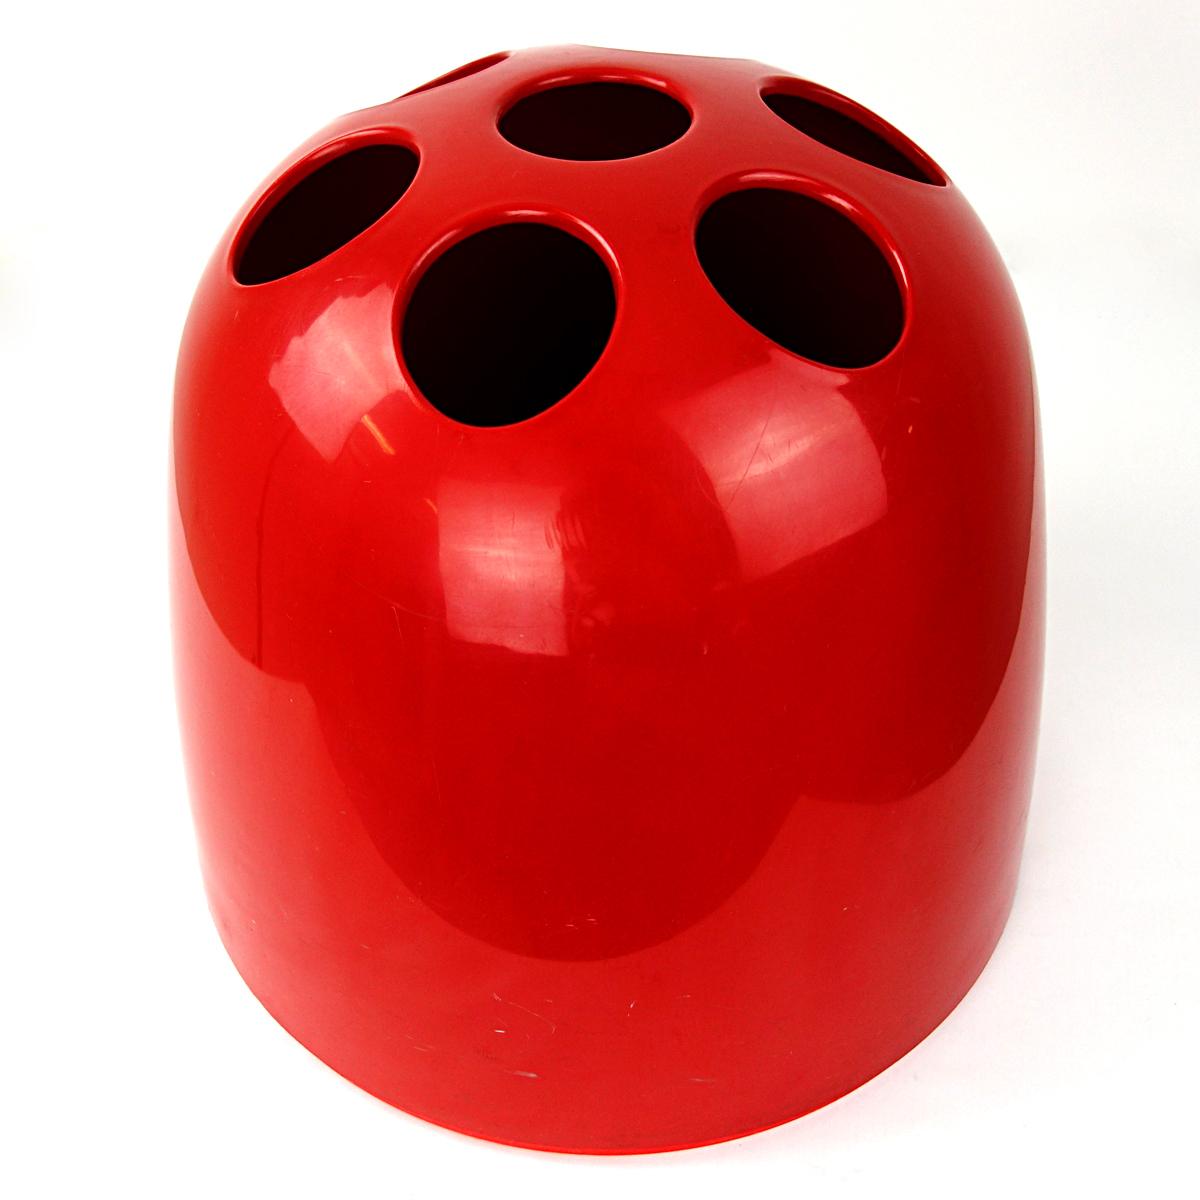 Der Schirmständer Dedalo wurde 1966 von Emma Gismondi Schweinberger für Artemide entworfen.
Er ist aus rotem ABS-Kunststoff gefertigt.
Die Serie bestand aus drei verschiedenen Größen: dem kleinen Dedalino (einem Bleistifthalter), dem mittelgroßen